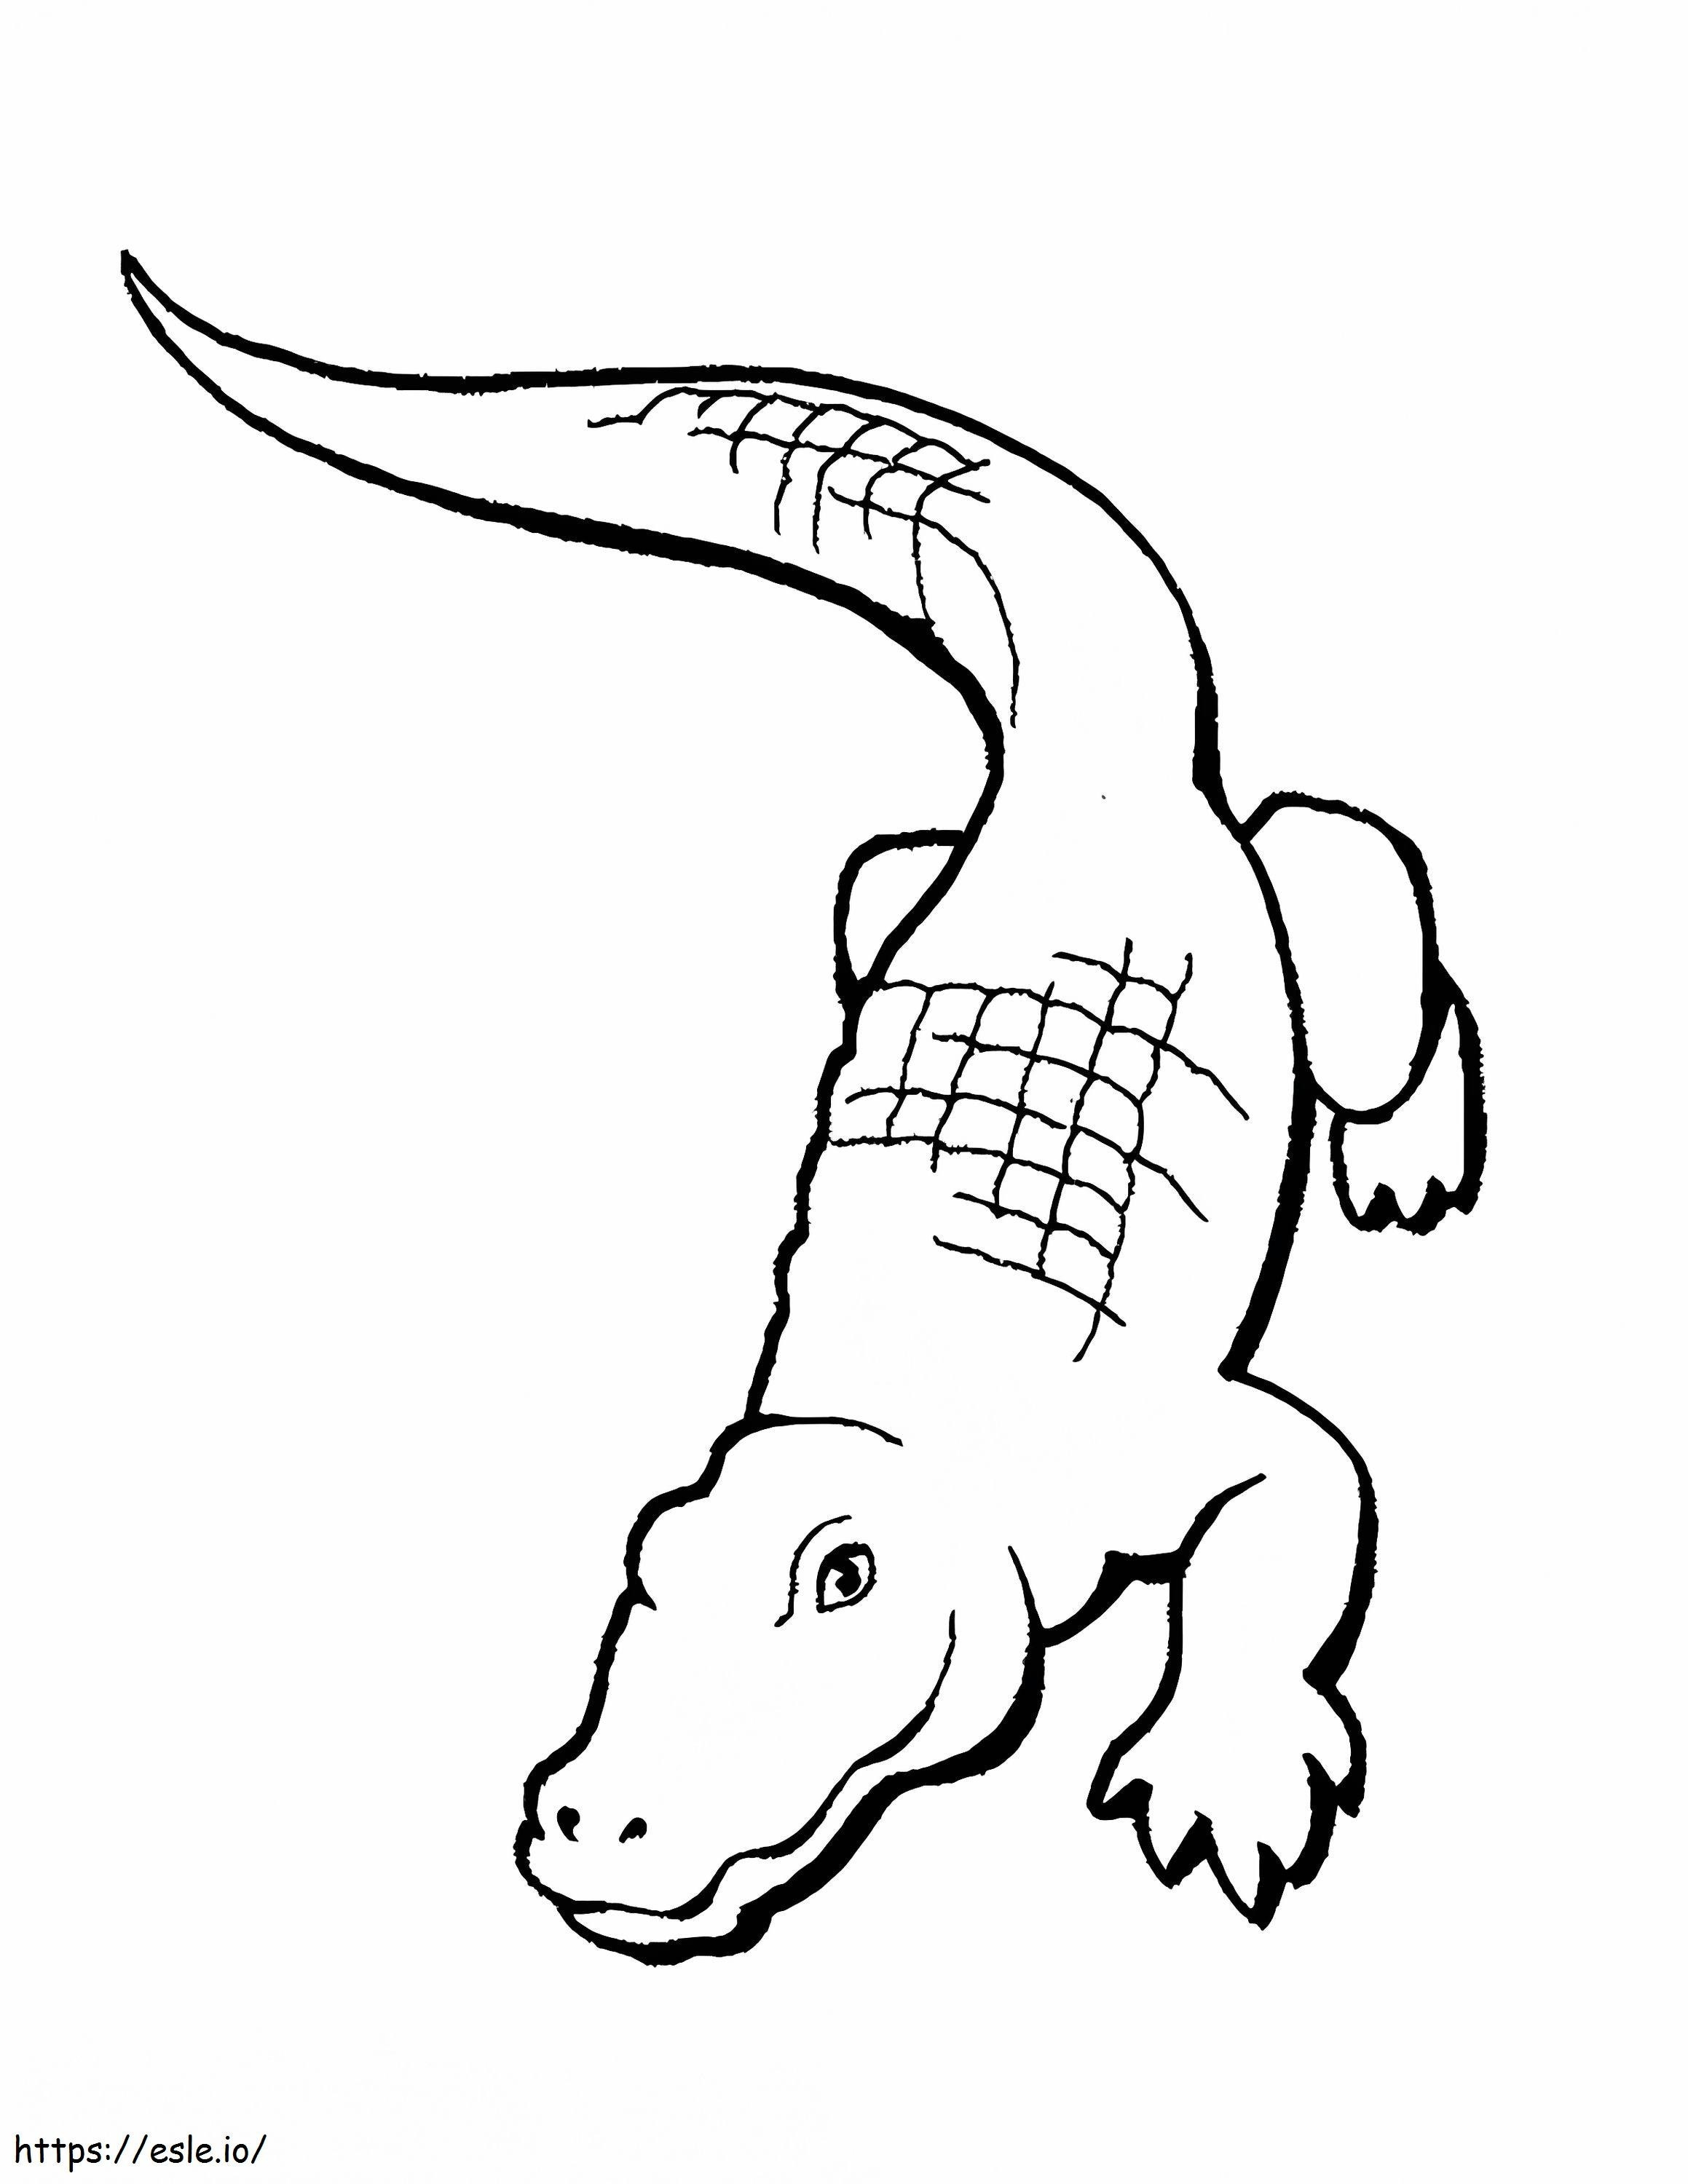 Desenho Básico do Crocodilo para colorir